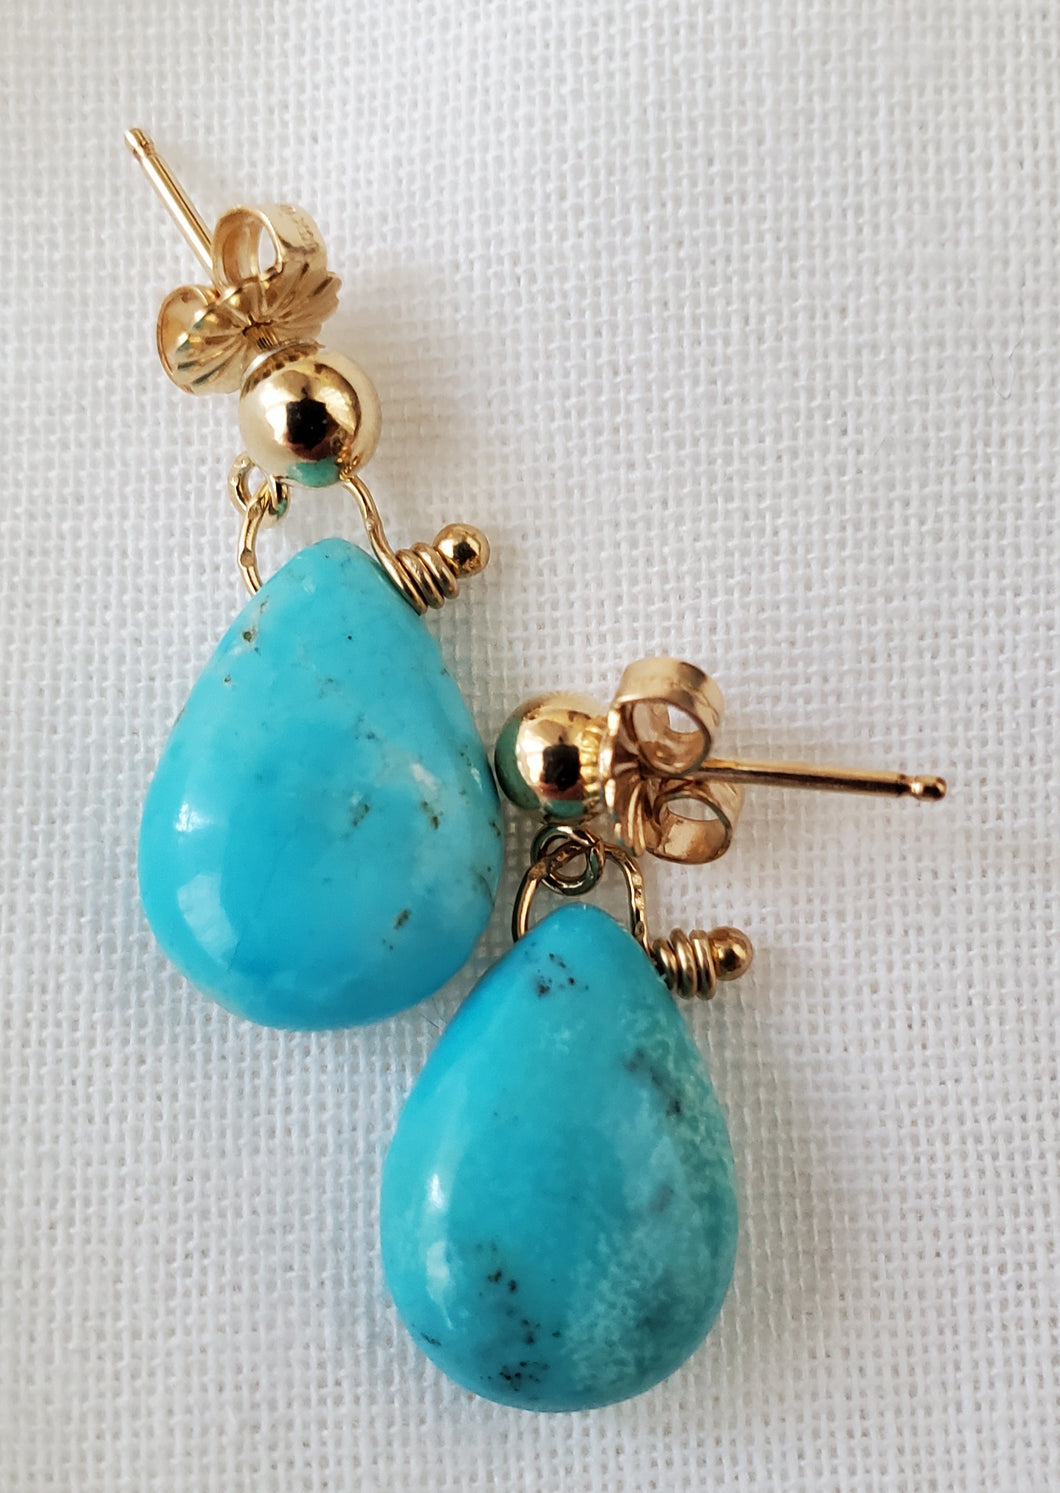 Simon & LuLu Turquoise post earrings